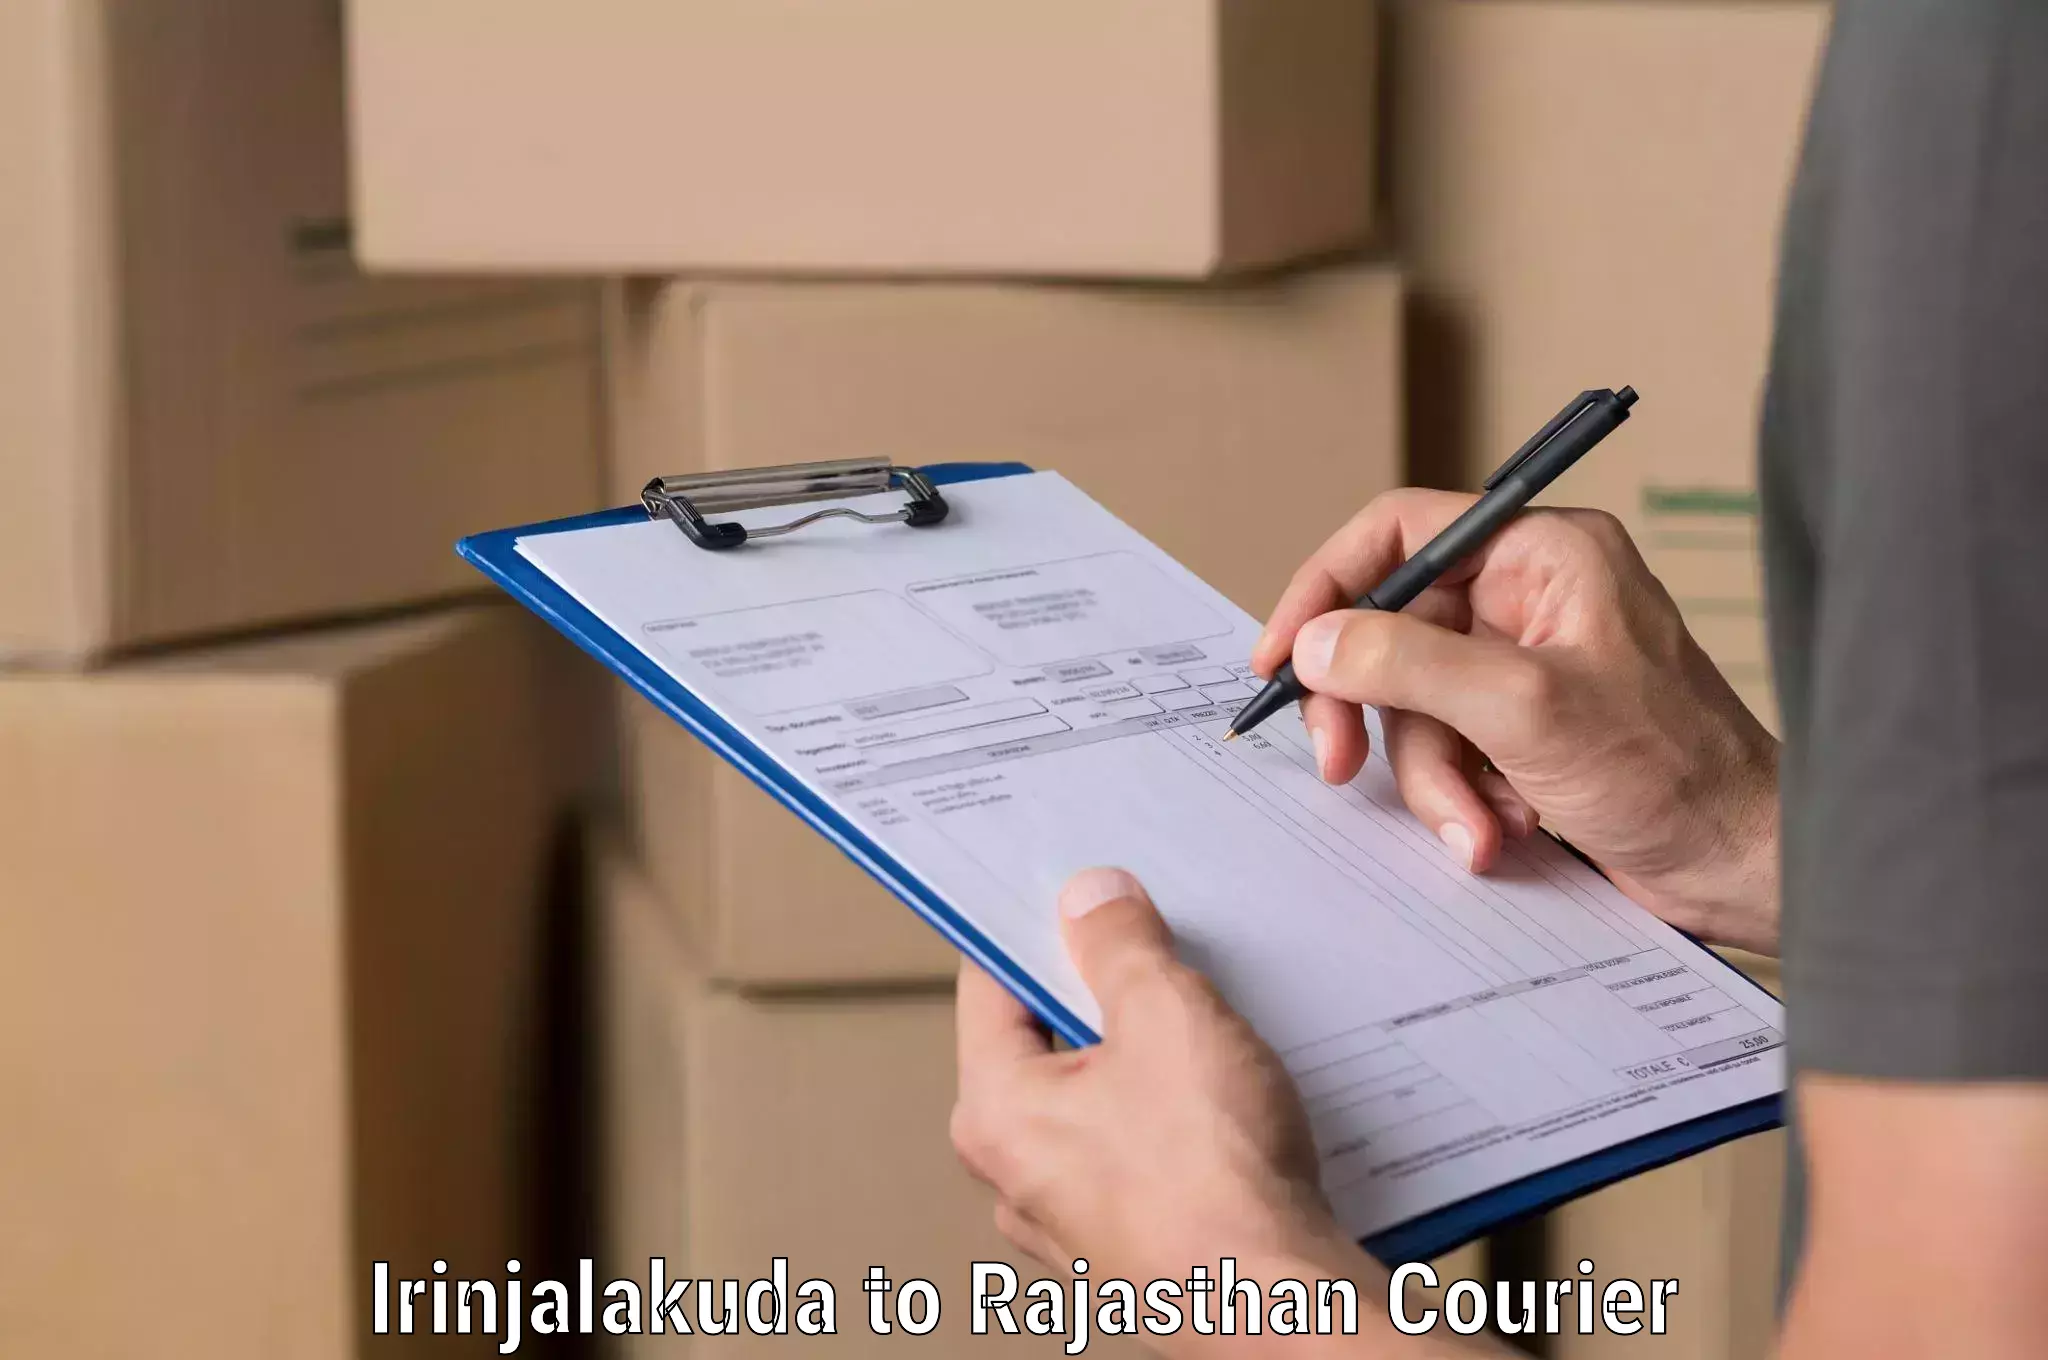 Comprehensive shipping strategies Irinjalakuda to Mathania